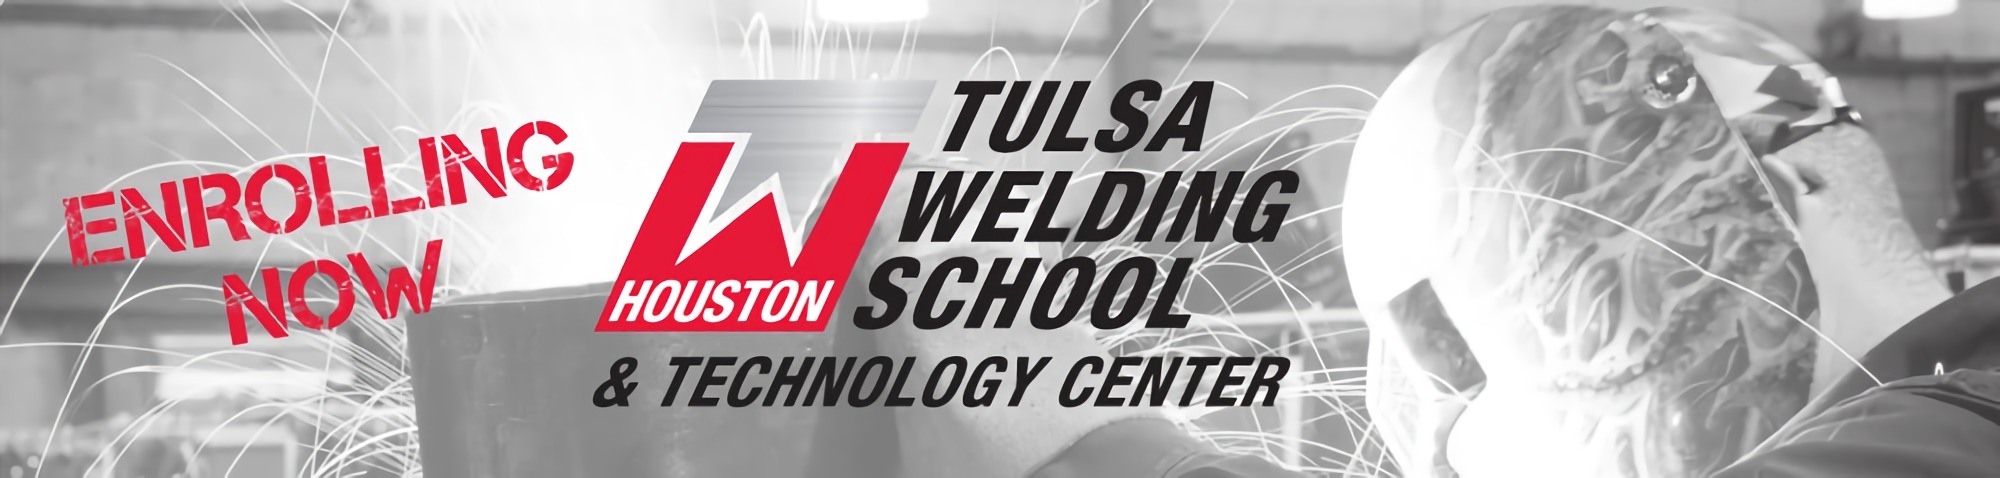 Centro de Tecnología y Escuela de Soldadura de Tulsa Houston Texas